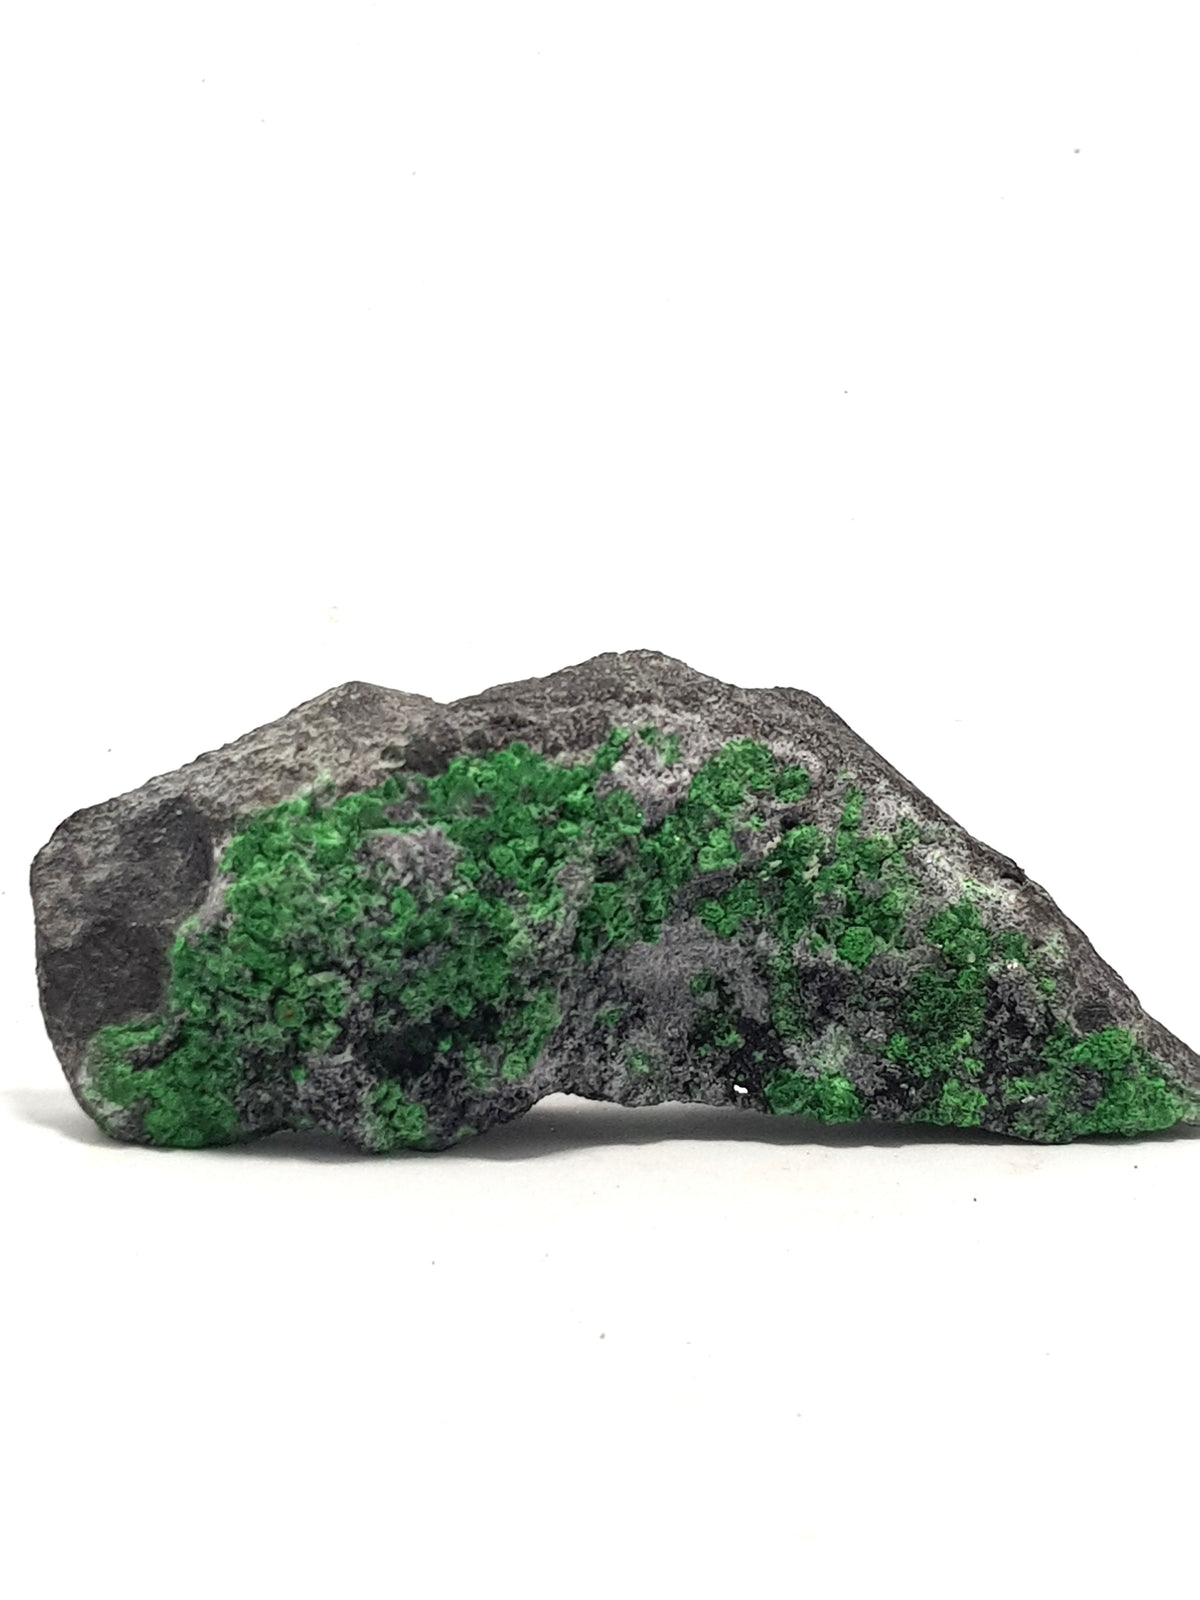 green uvarovite crystals on a dark grey matrix